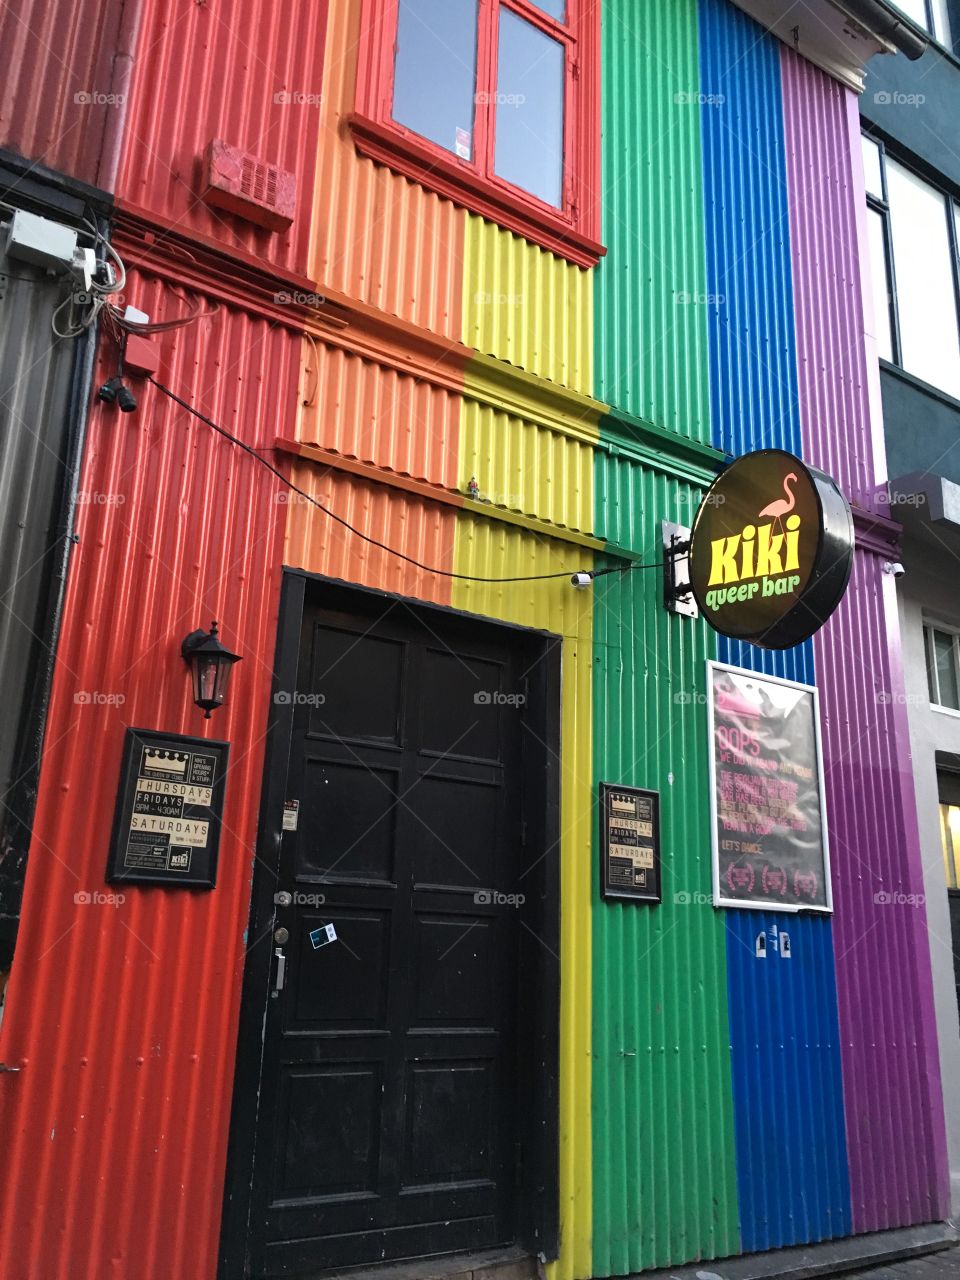 A bar in Reykjavik, Iceland. 2016. 